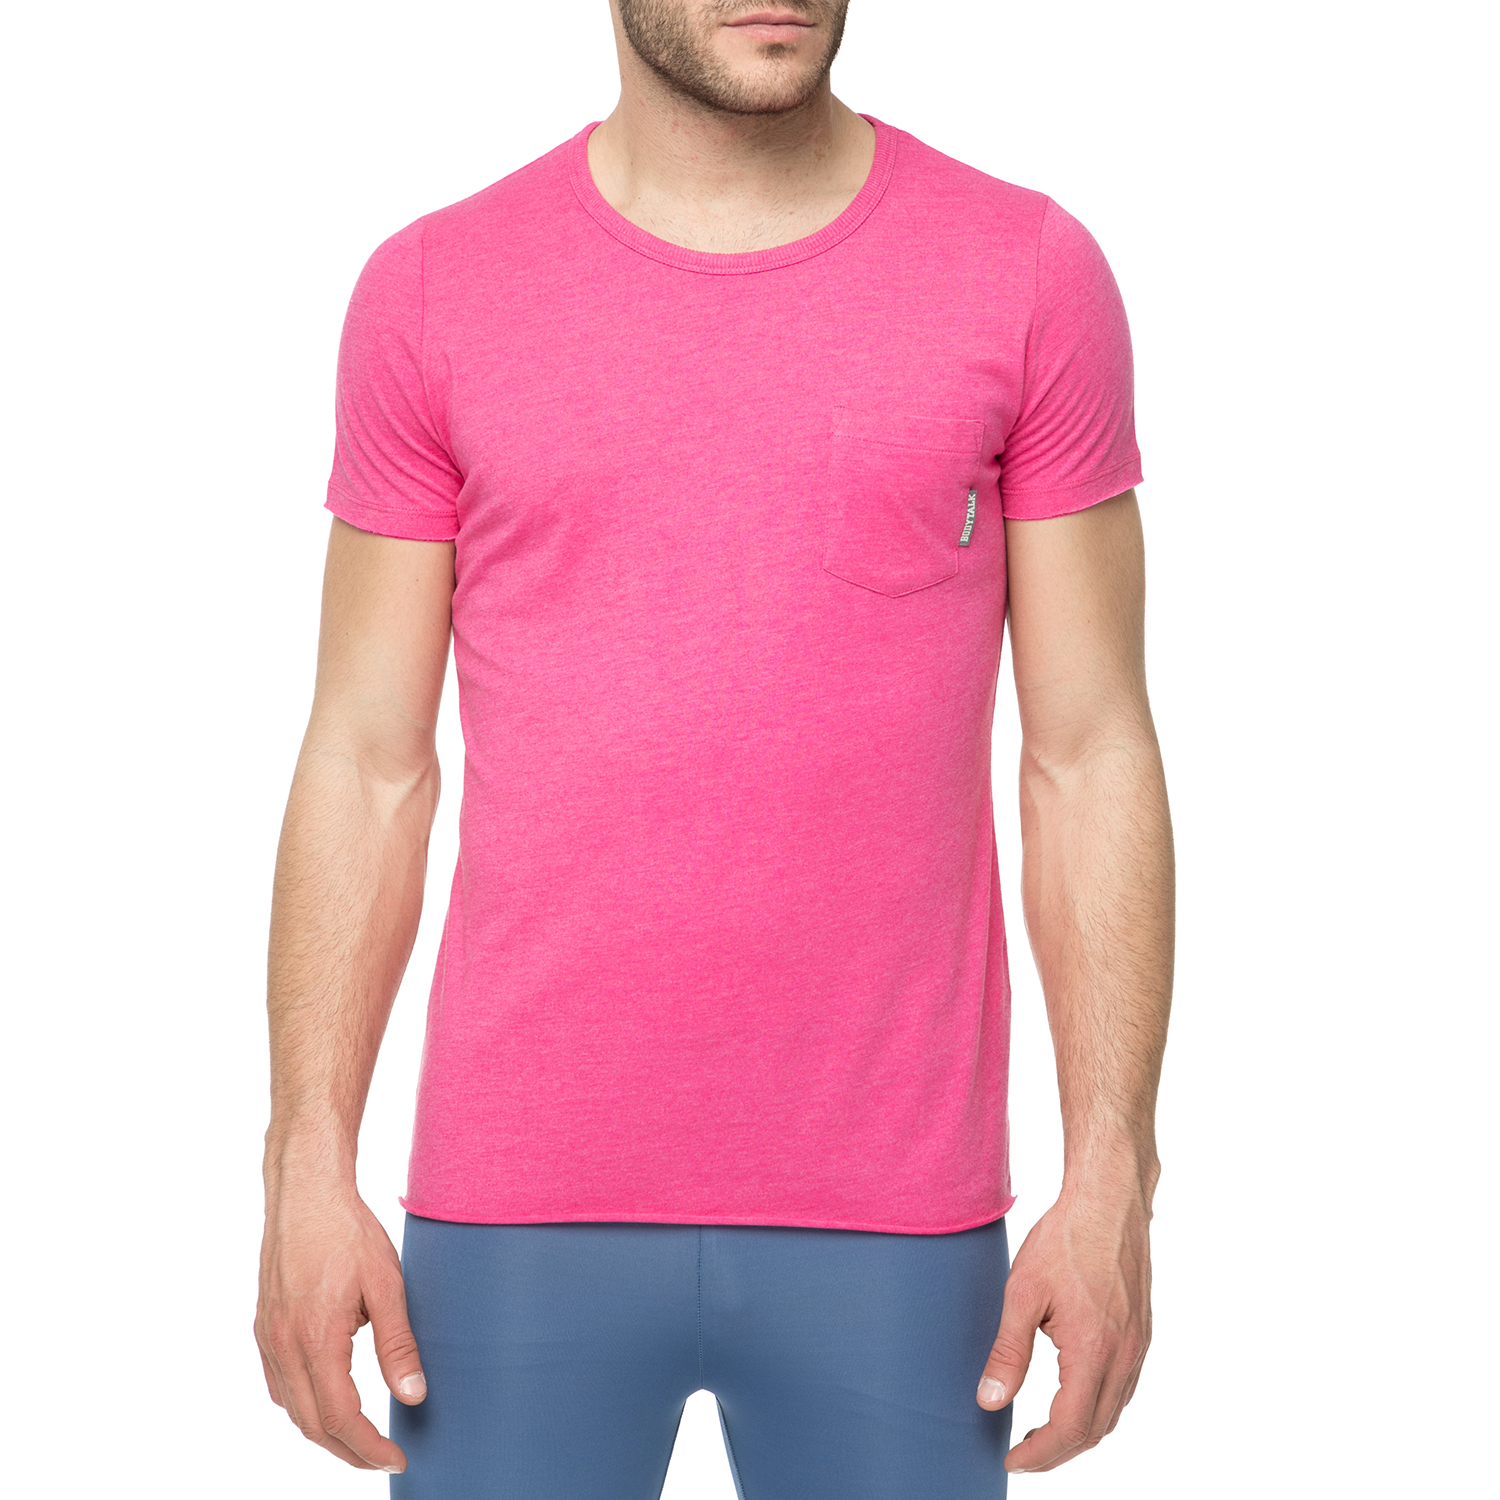 Ανδρικά/Ρούχα/Μπλούζες/Κοντομάνικες BODYTALK - Ανδρικό t-shirt Bodytalk INFLUENCEM φούξια